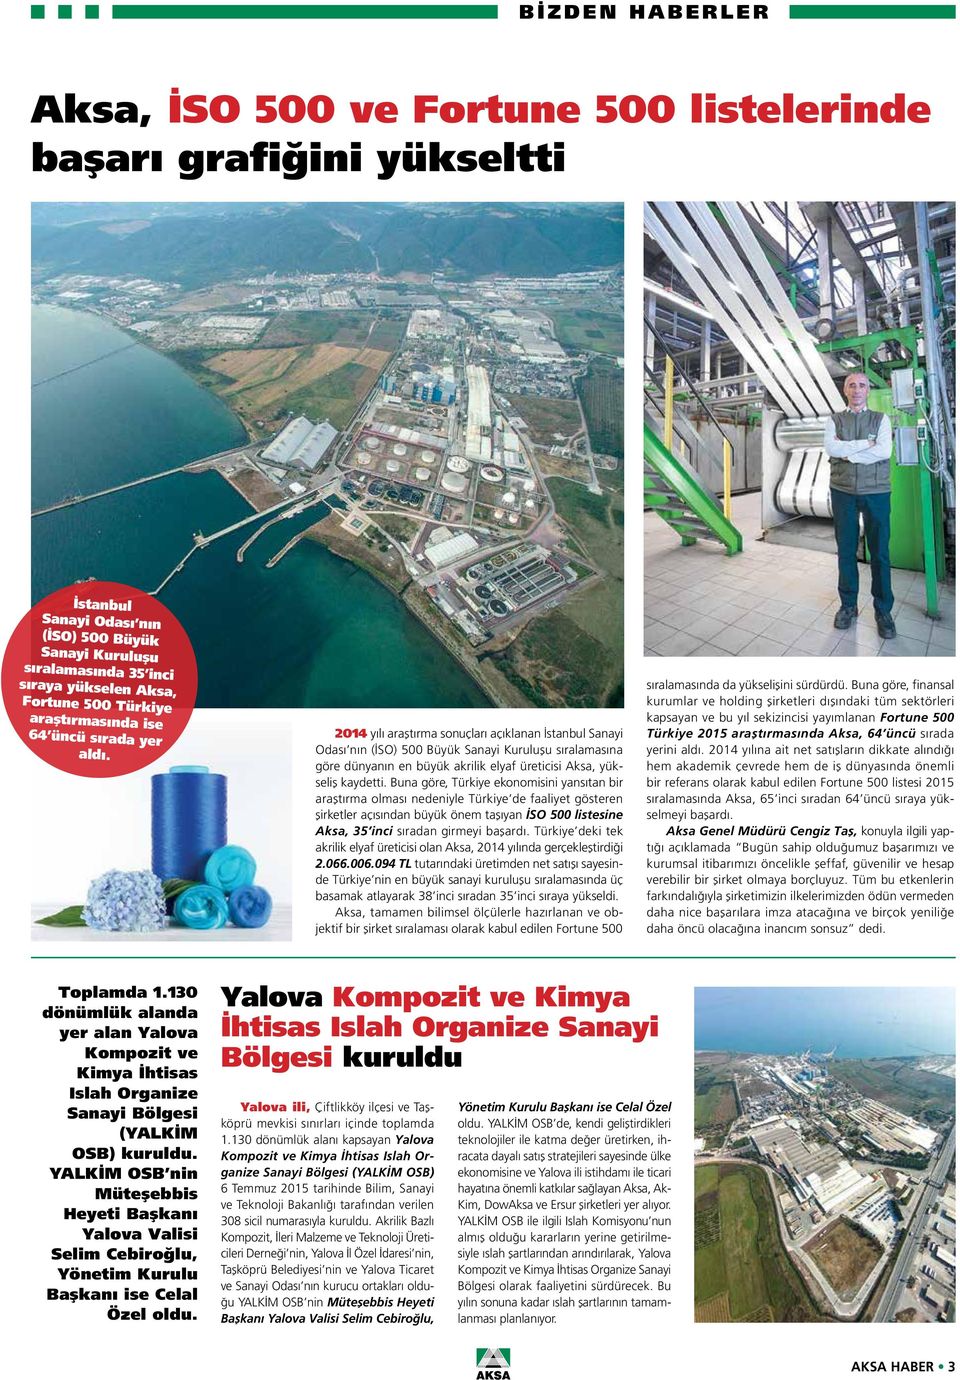 2014 yılı araştırma sonuçları açıklanan İstanbul Sanayi Odası nın (İSO) 500 Büyük Sanayi Kuruluşu sıralamasına göre dünyanın en büyük akrilik elyaf üreticisi Aksa, yükseliş kaydetti.